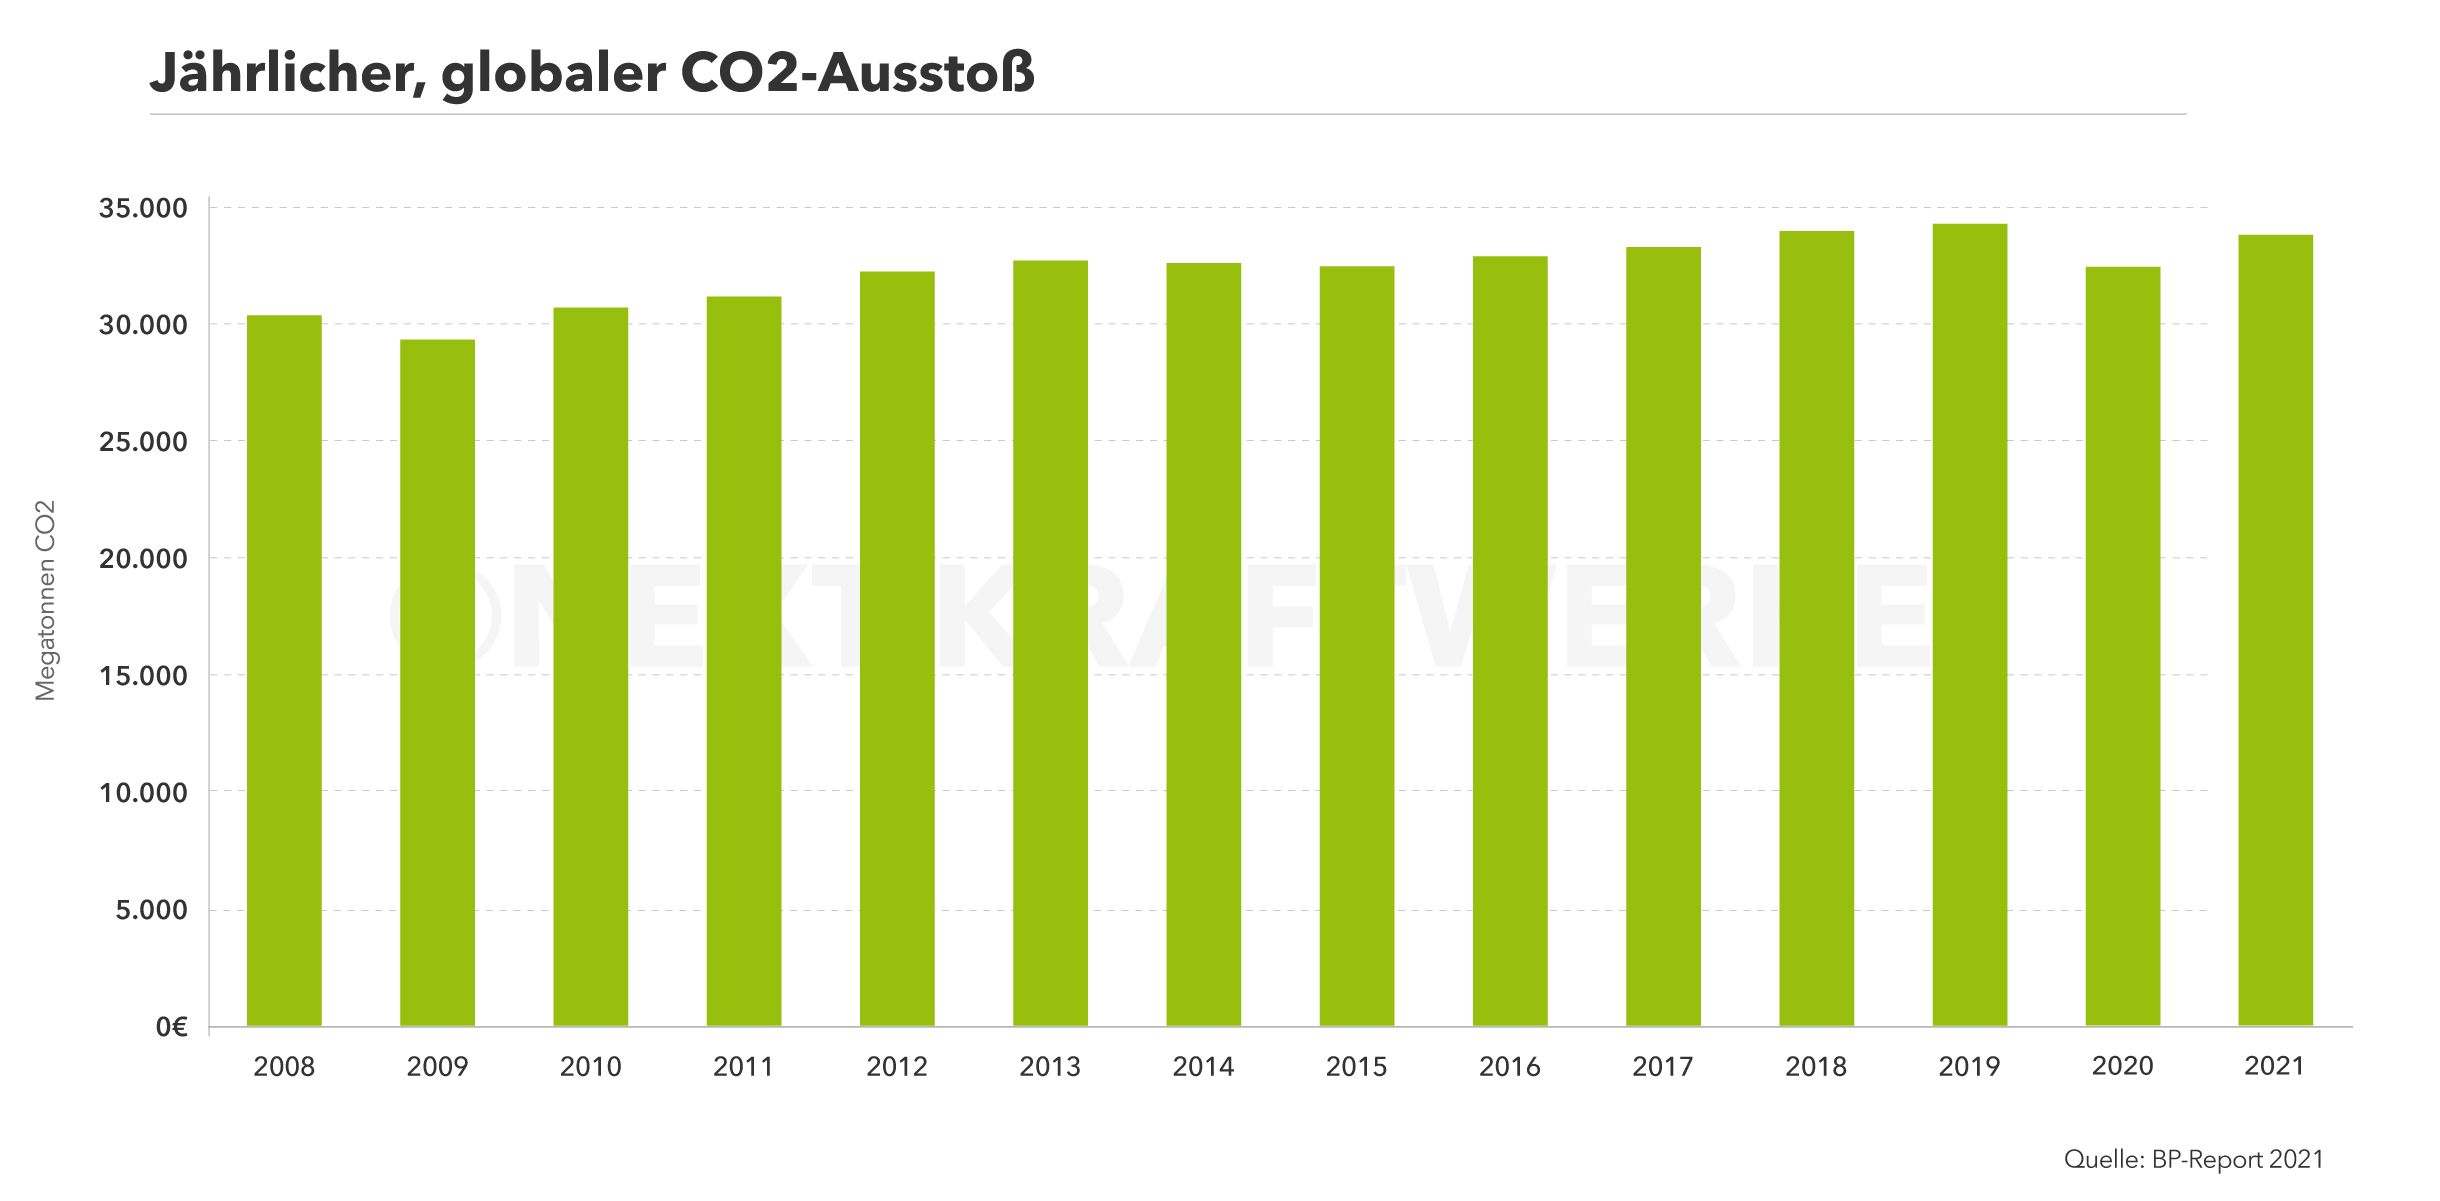 Graphische Darstellung des globalen CO2 Ausstoßes